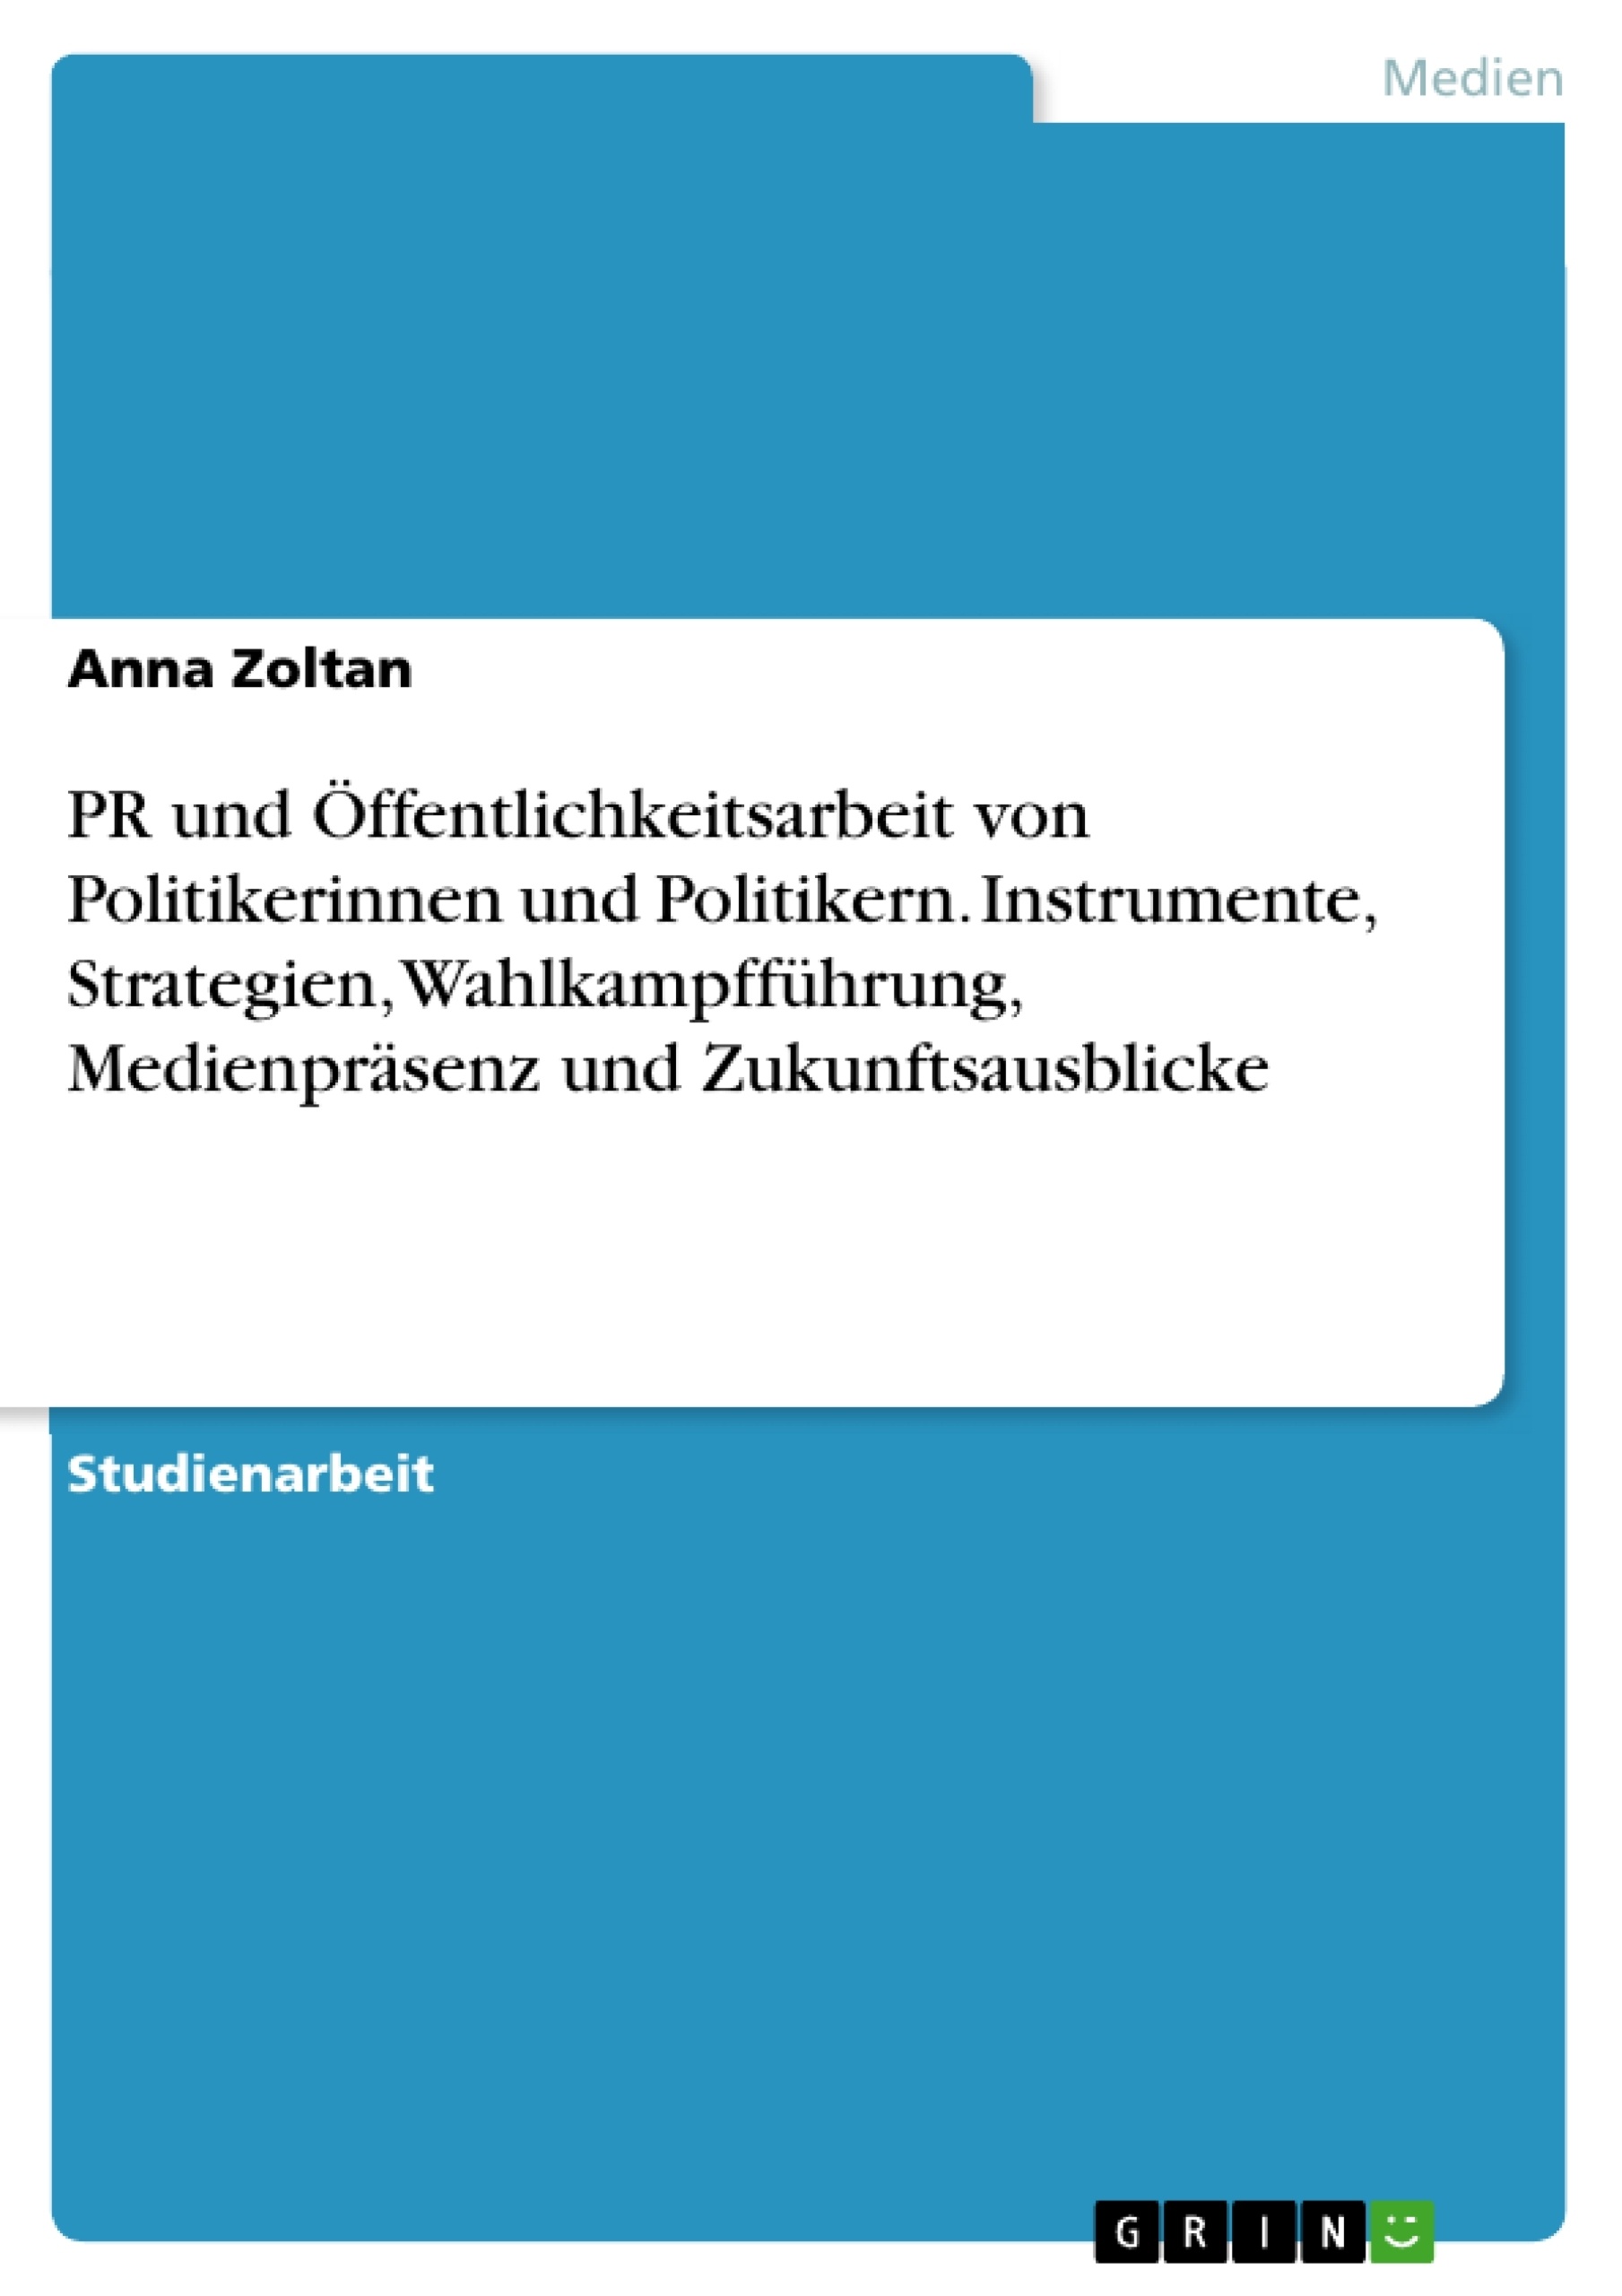 Title: PR und Öffentlichkeitsarbeit von Politikerinnen und Politikern. Instrumente, Strategien, Wahlkampfführung, Medienpräsenz und Zukunftsausblicke